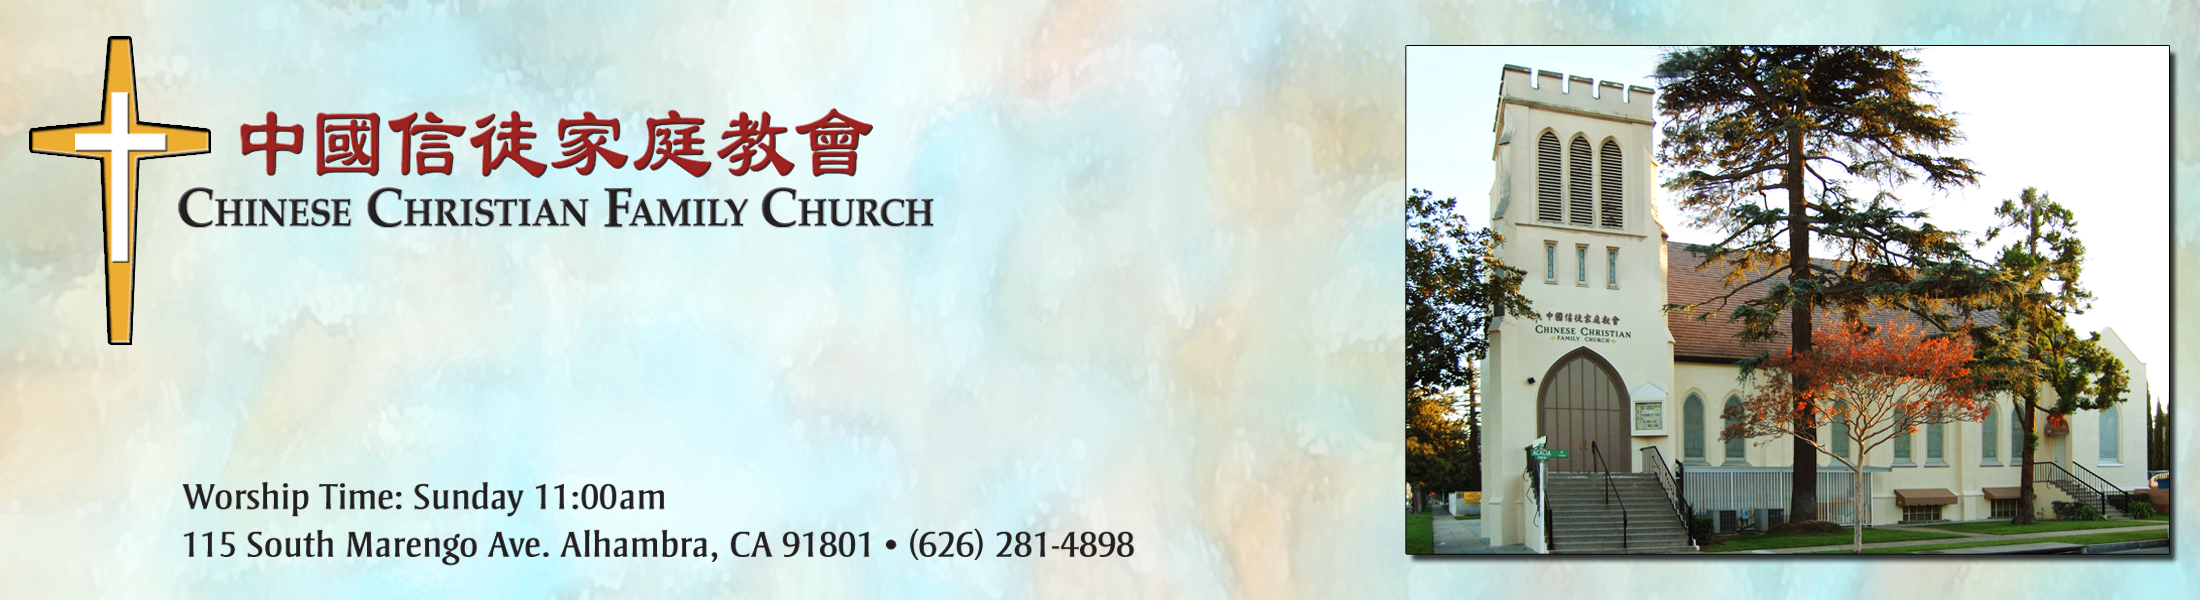 中國信徒家庭教會 CCFCalh